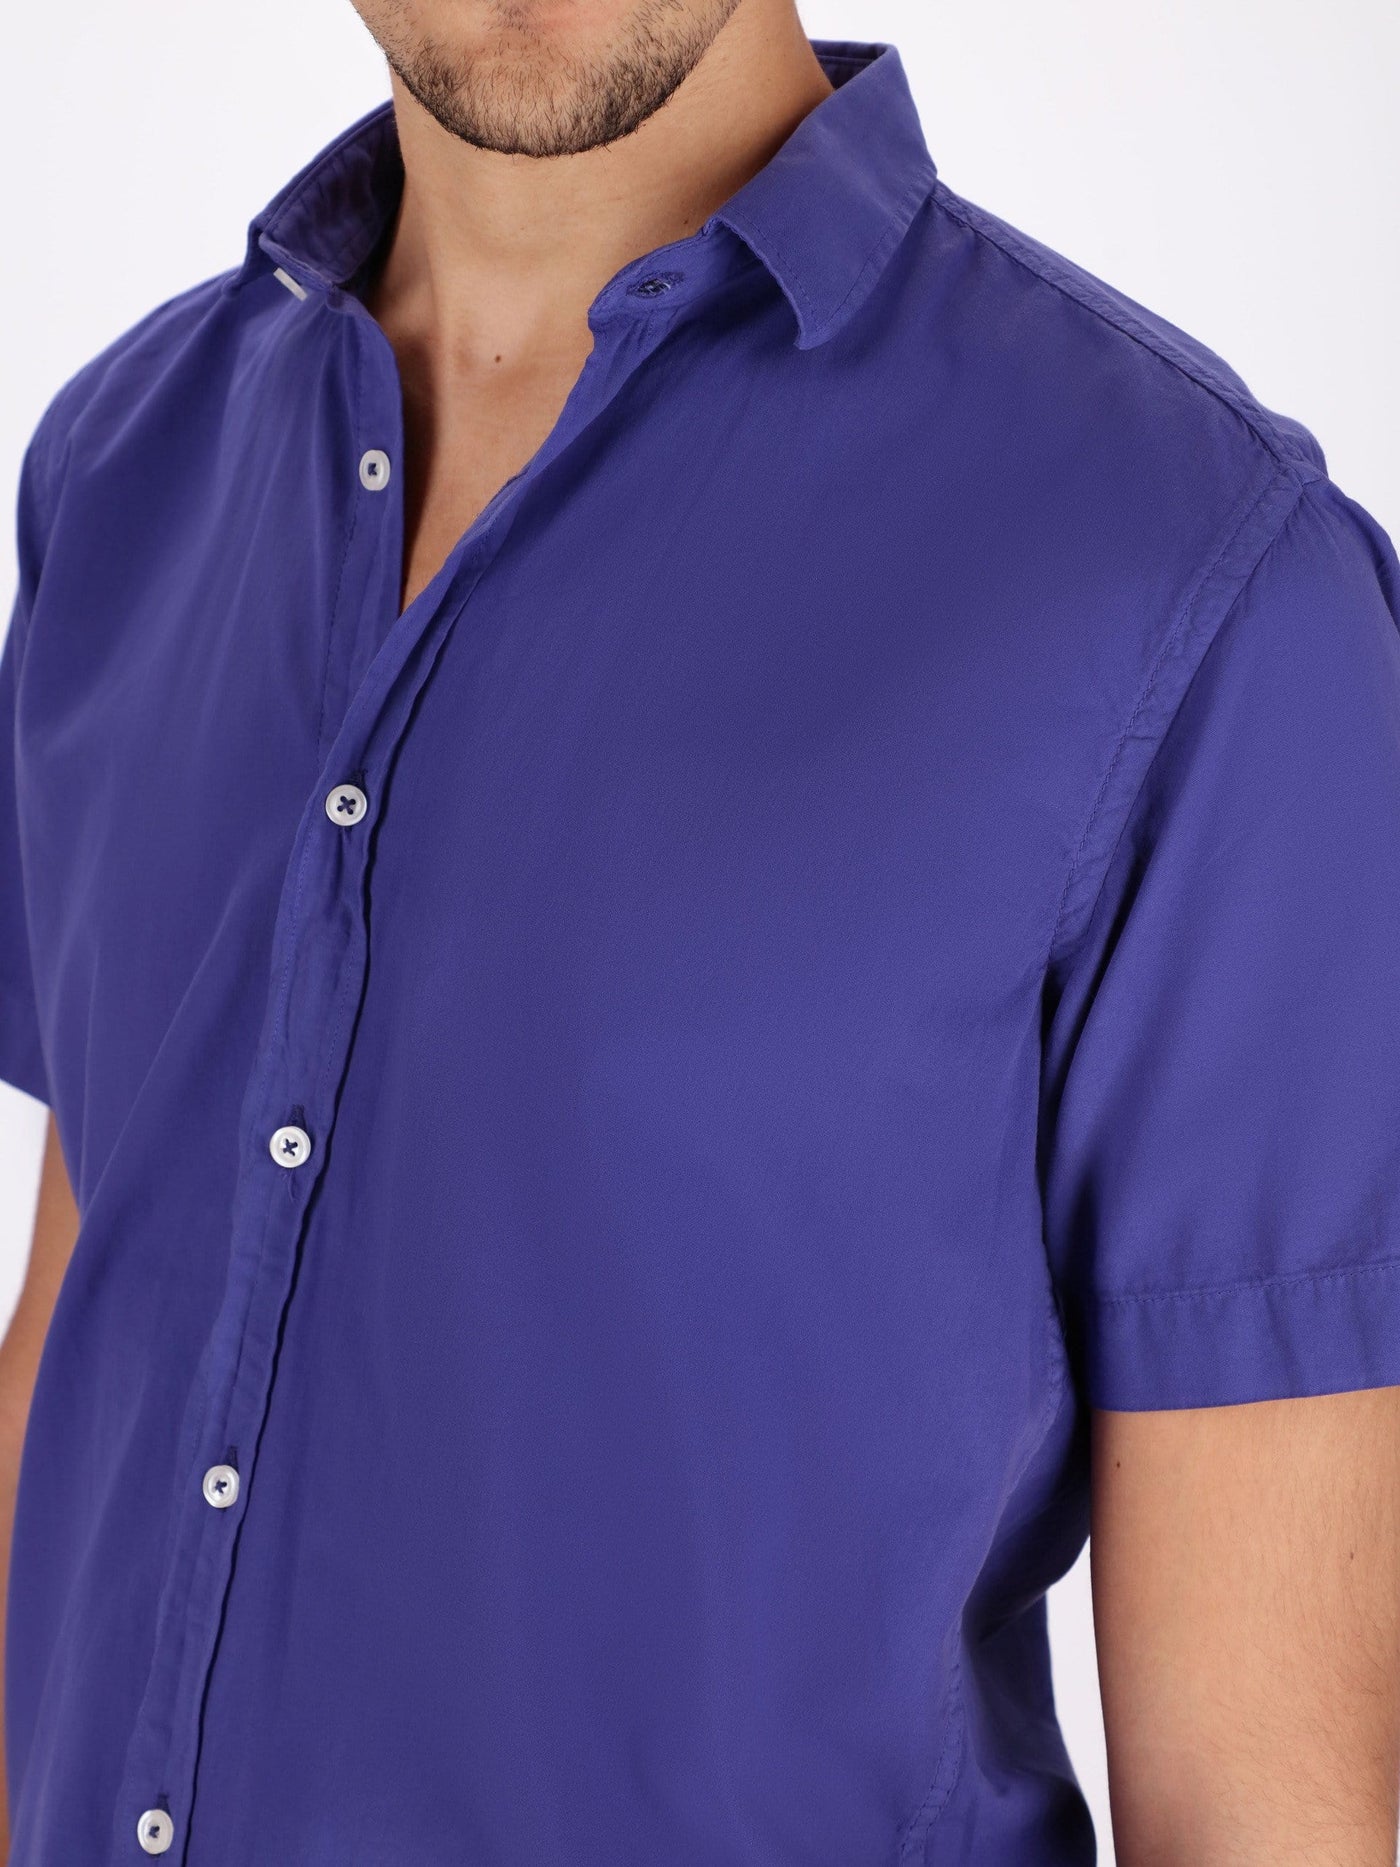 OR Shirts Dark Purple-V24 / M Basic Short Sleeve Turn-Down Collar Shirt